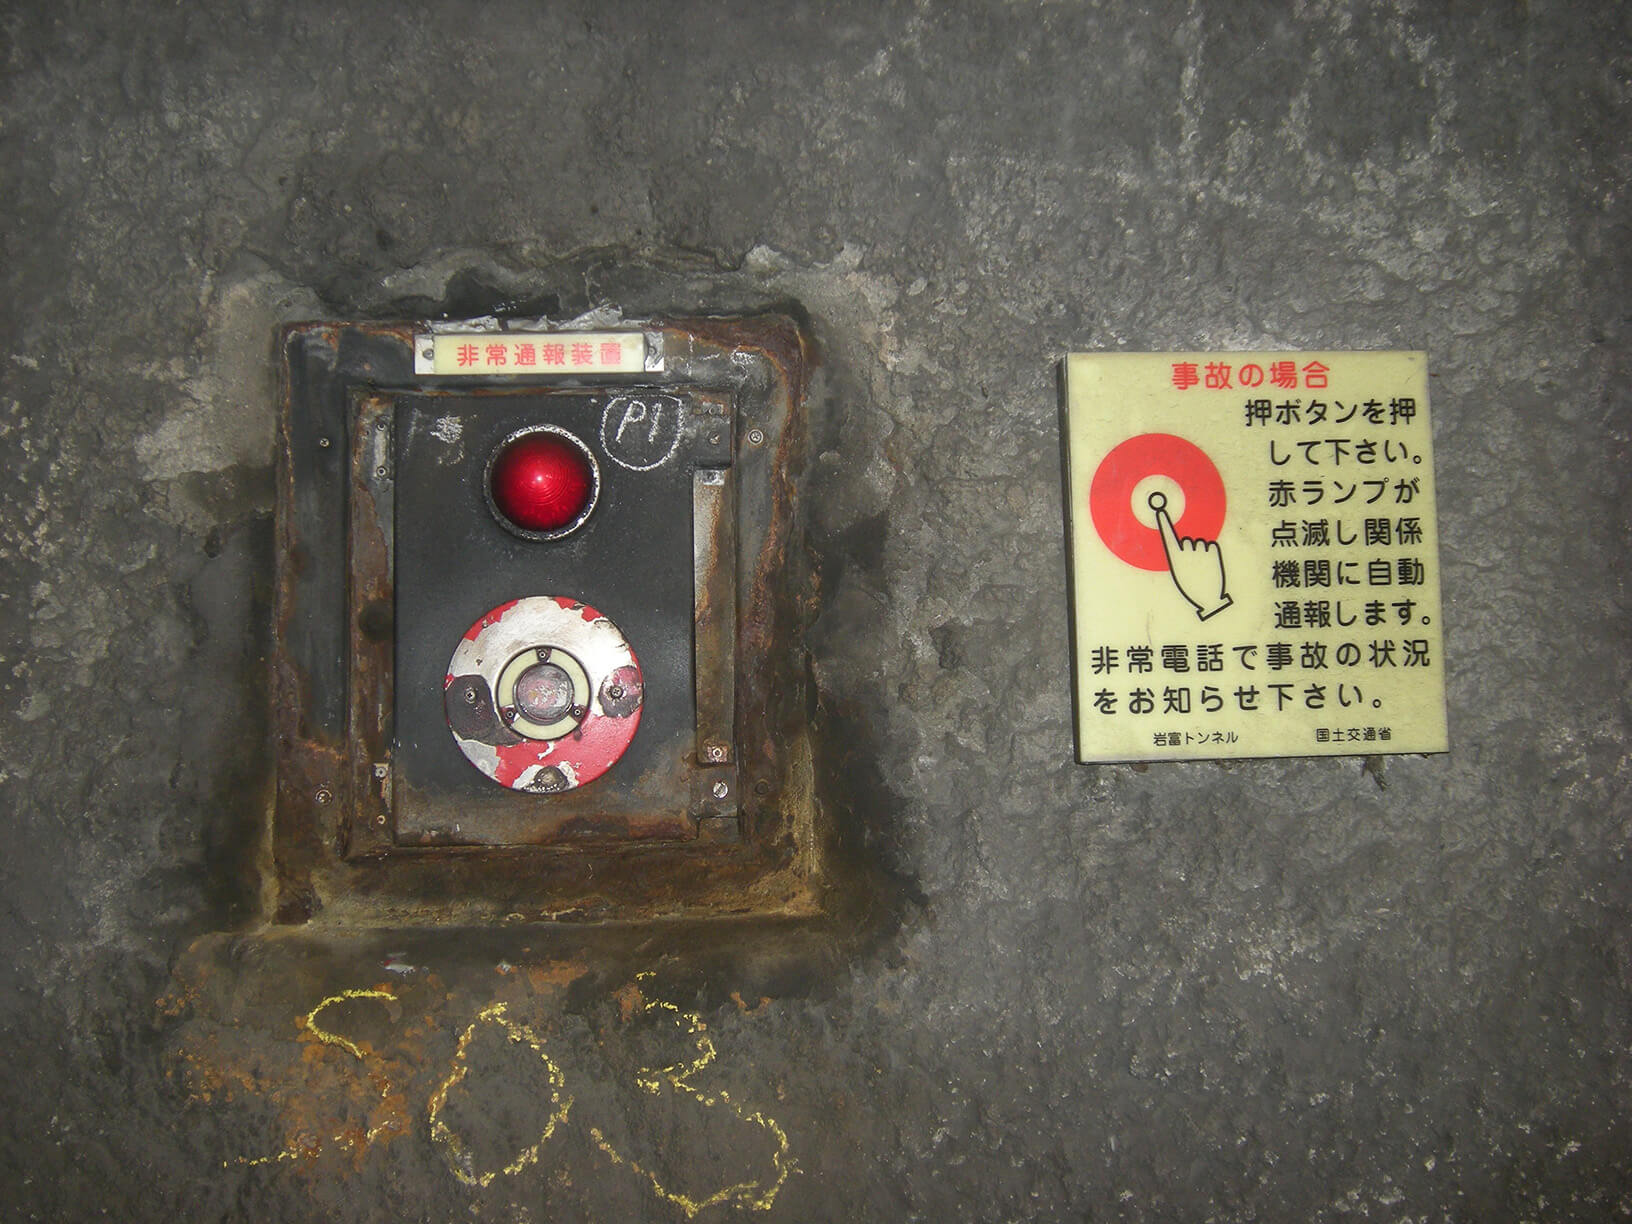 千葉県岩富トンネルに施工された非常通報装置の使用方法を示す明視下のハイブリッドストーン アベイラス アルシオール サインプレート（高輝度蓄光式屋外用案内標示板）